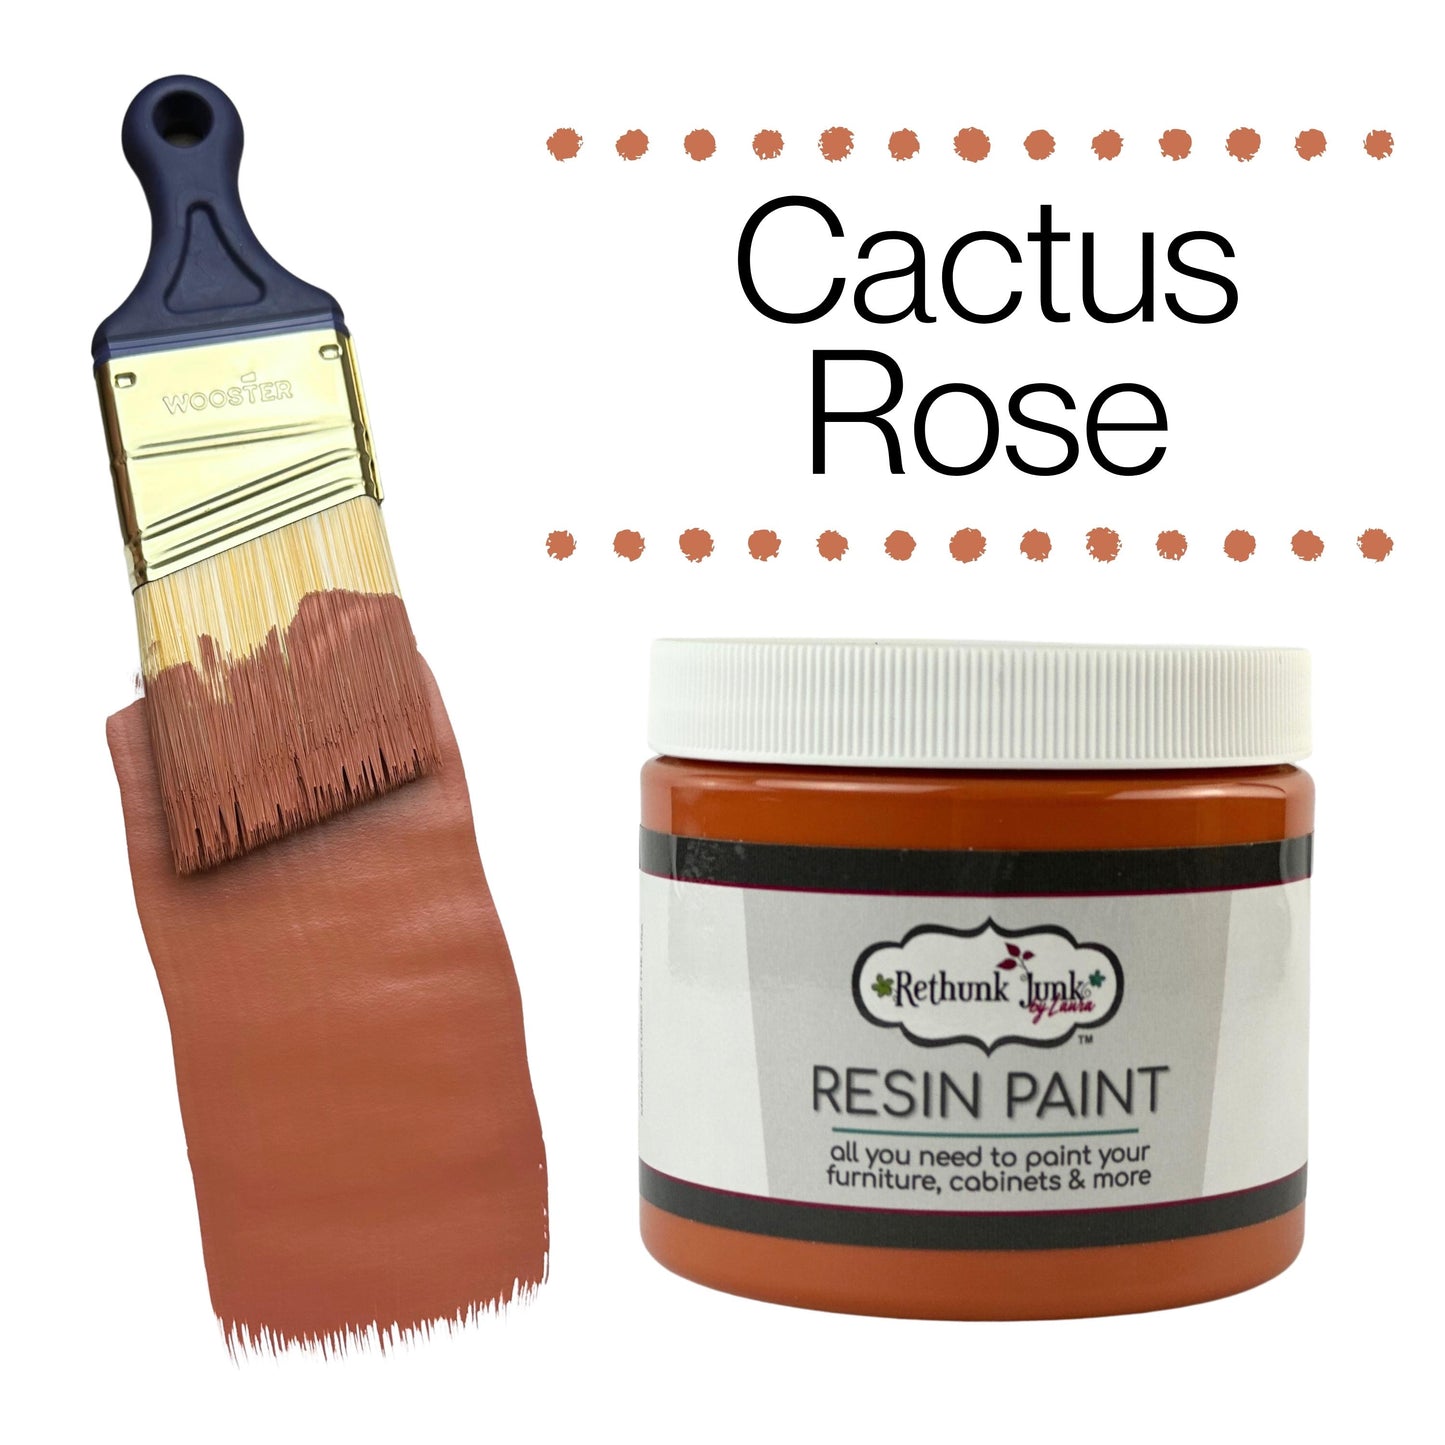 Rethunk Junk Resin Paint in Cactus Rose